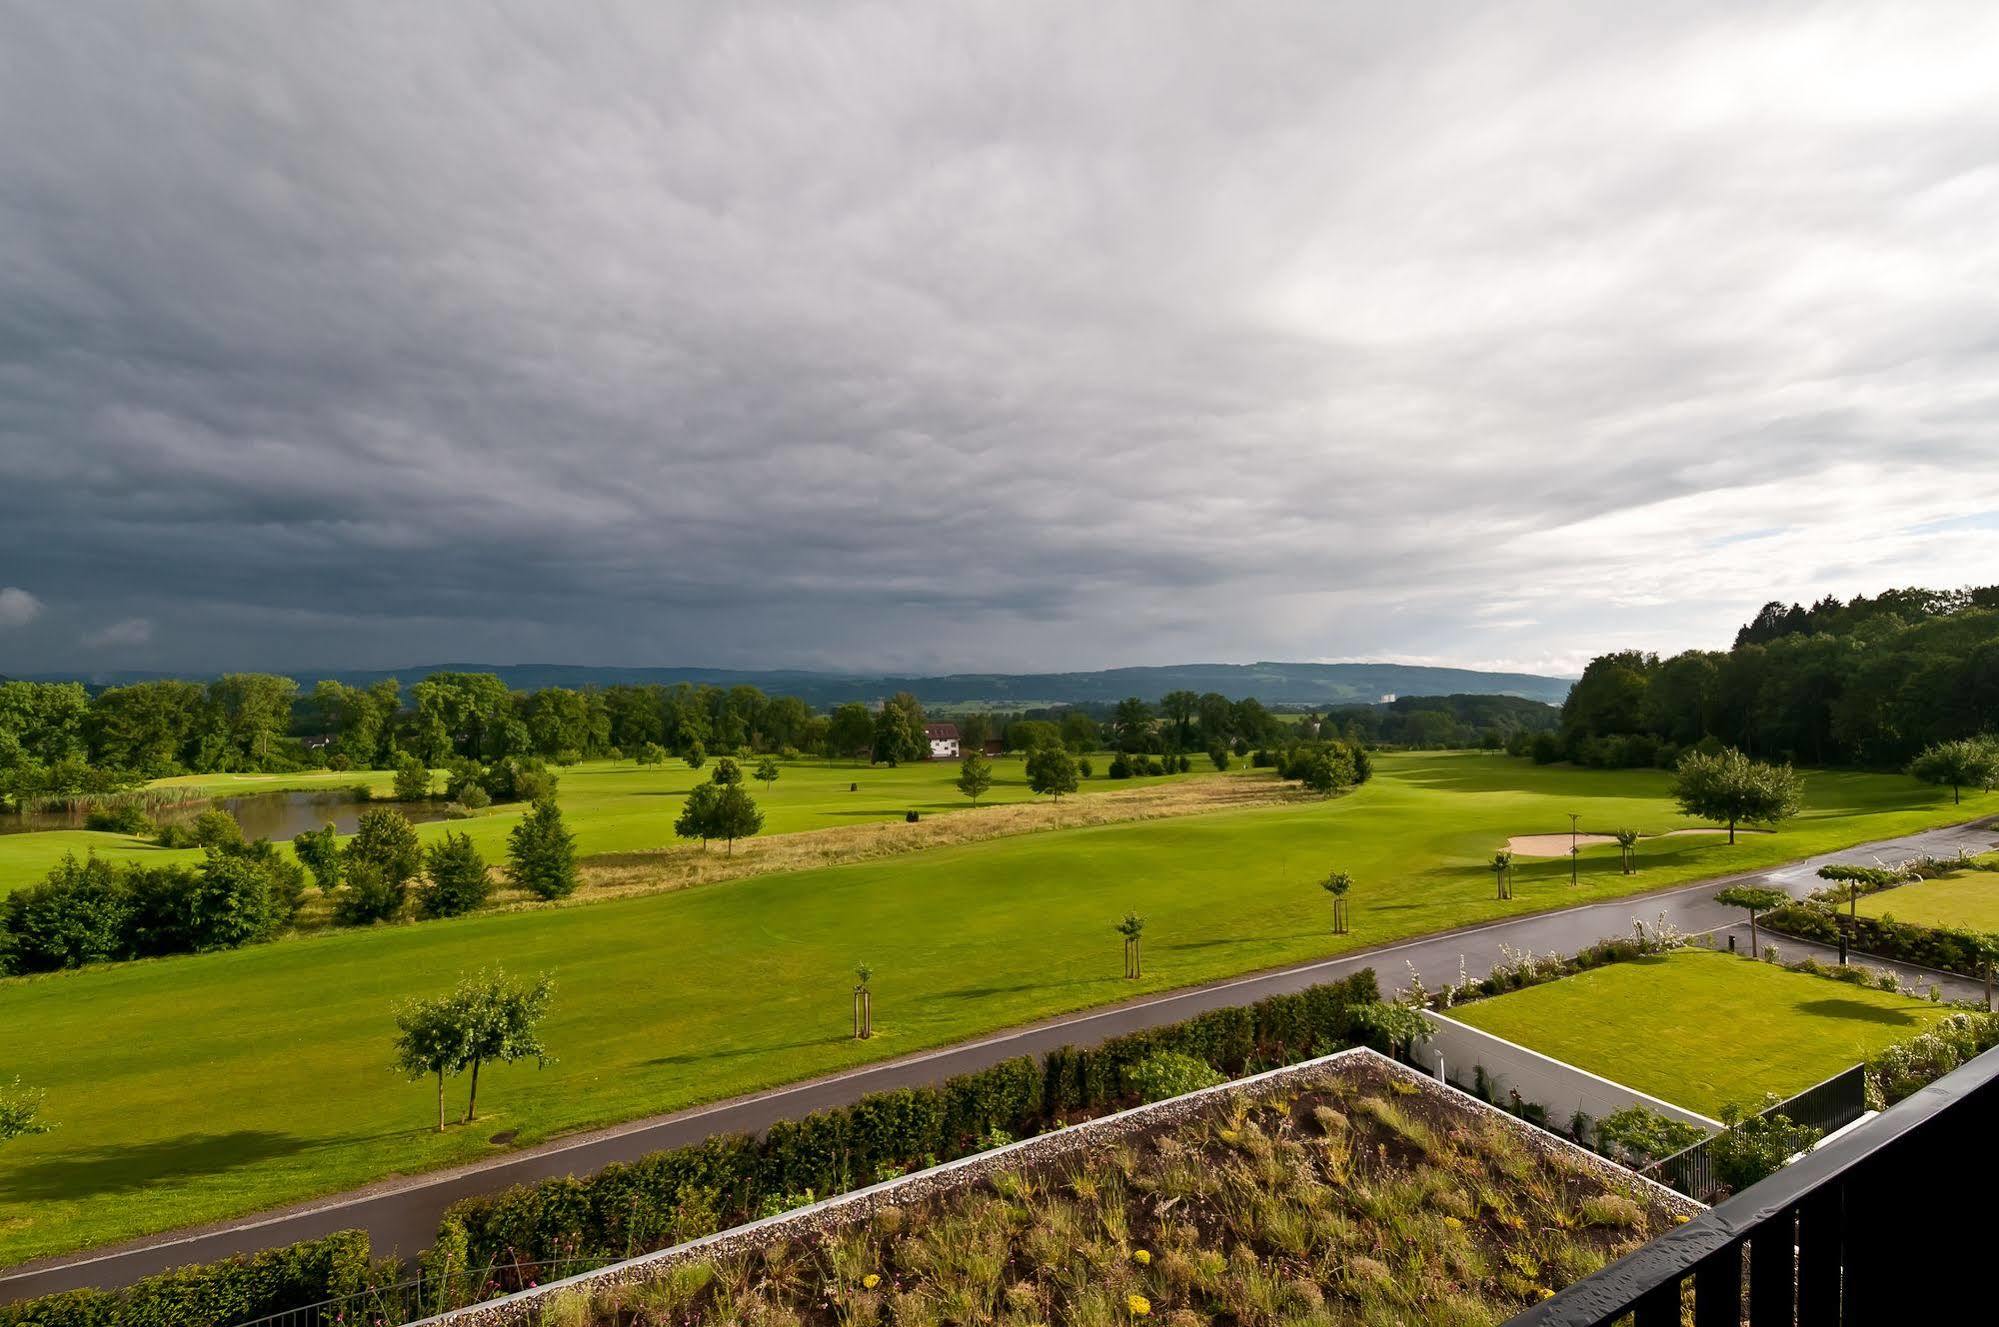 ליפרסוויל Wellnesshotel Golf Panorama מראה חיצוני תמונה